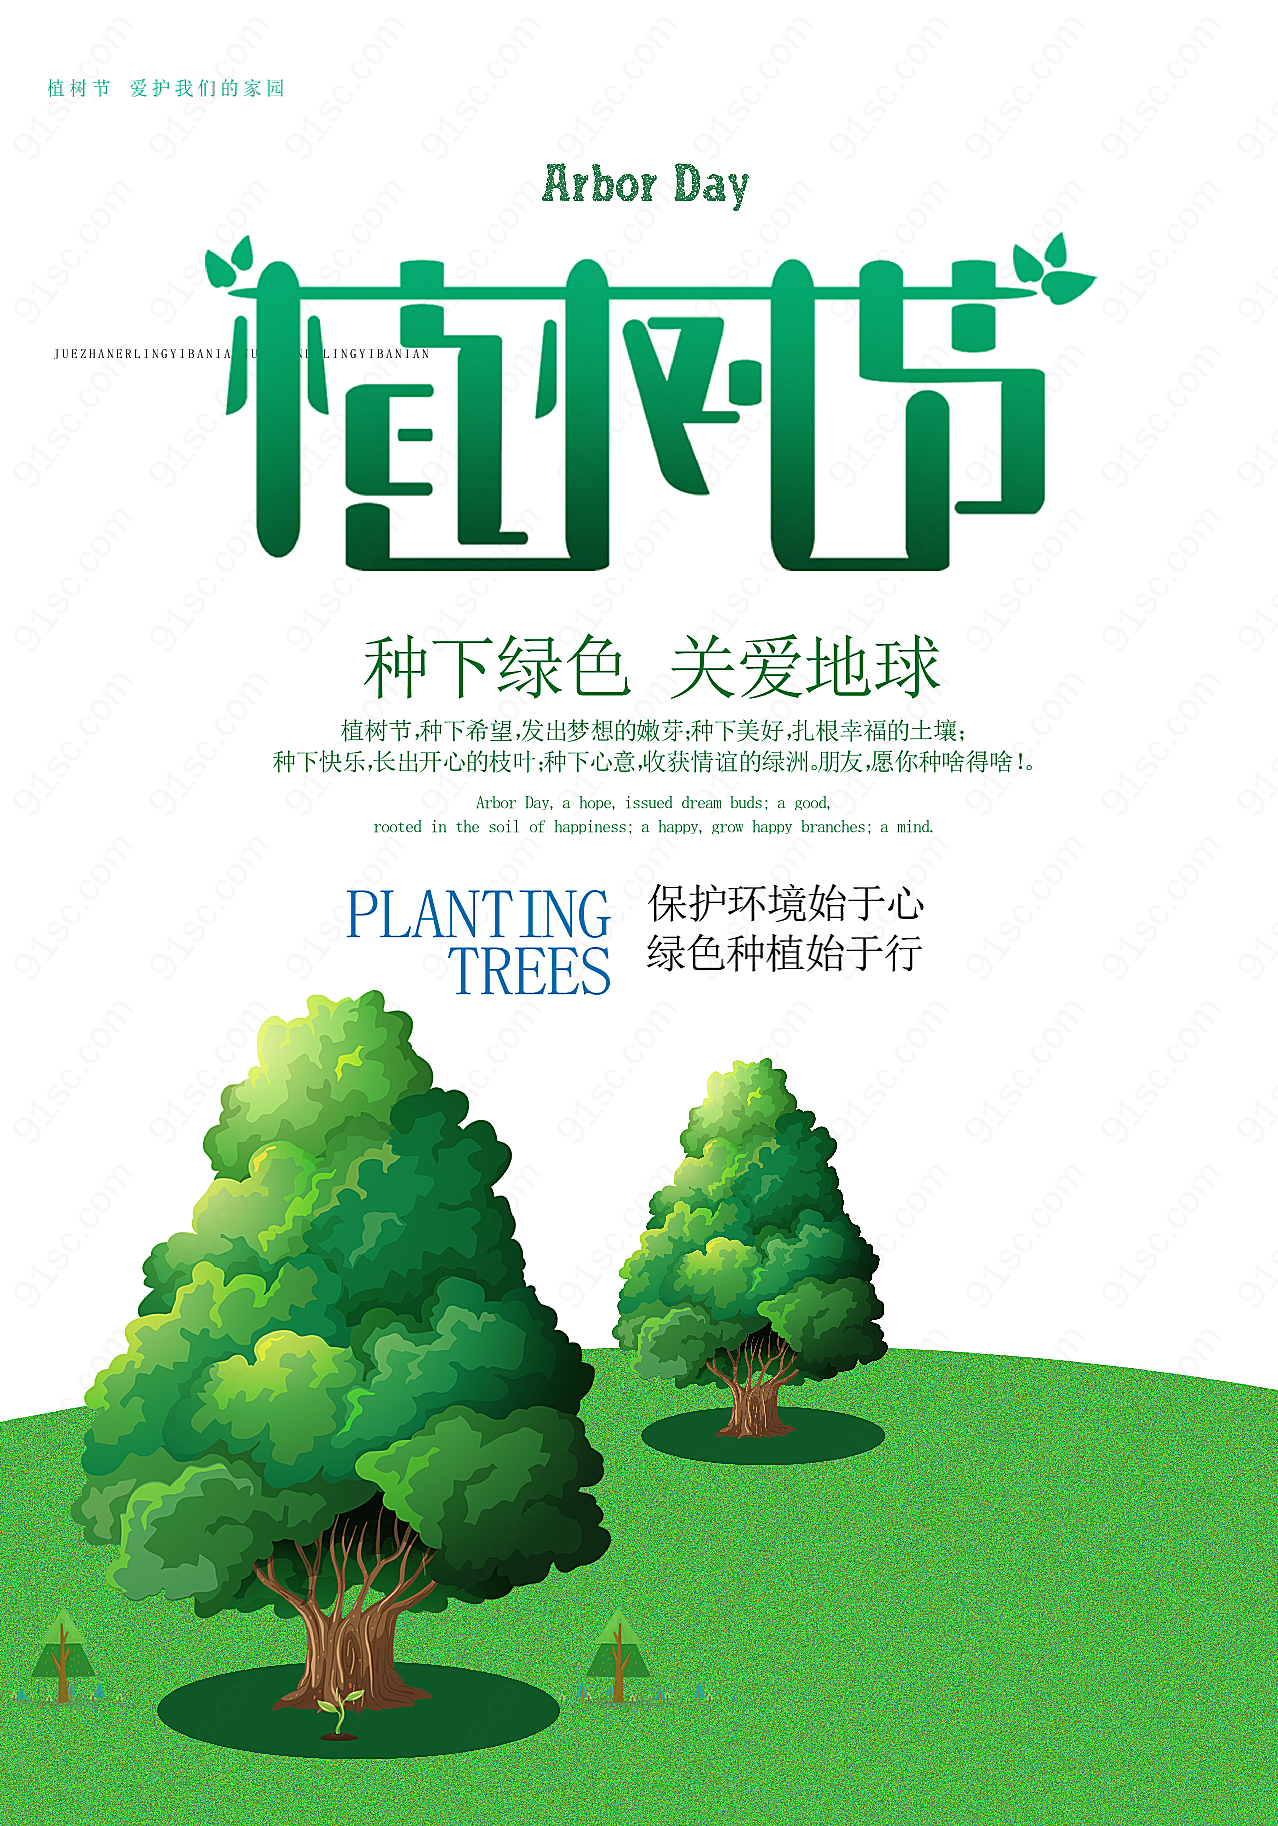 植树节文案海报设计素材节日庆典